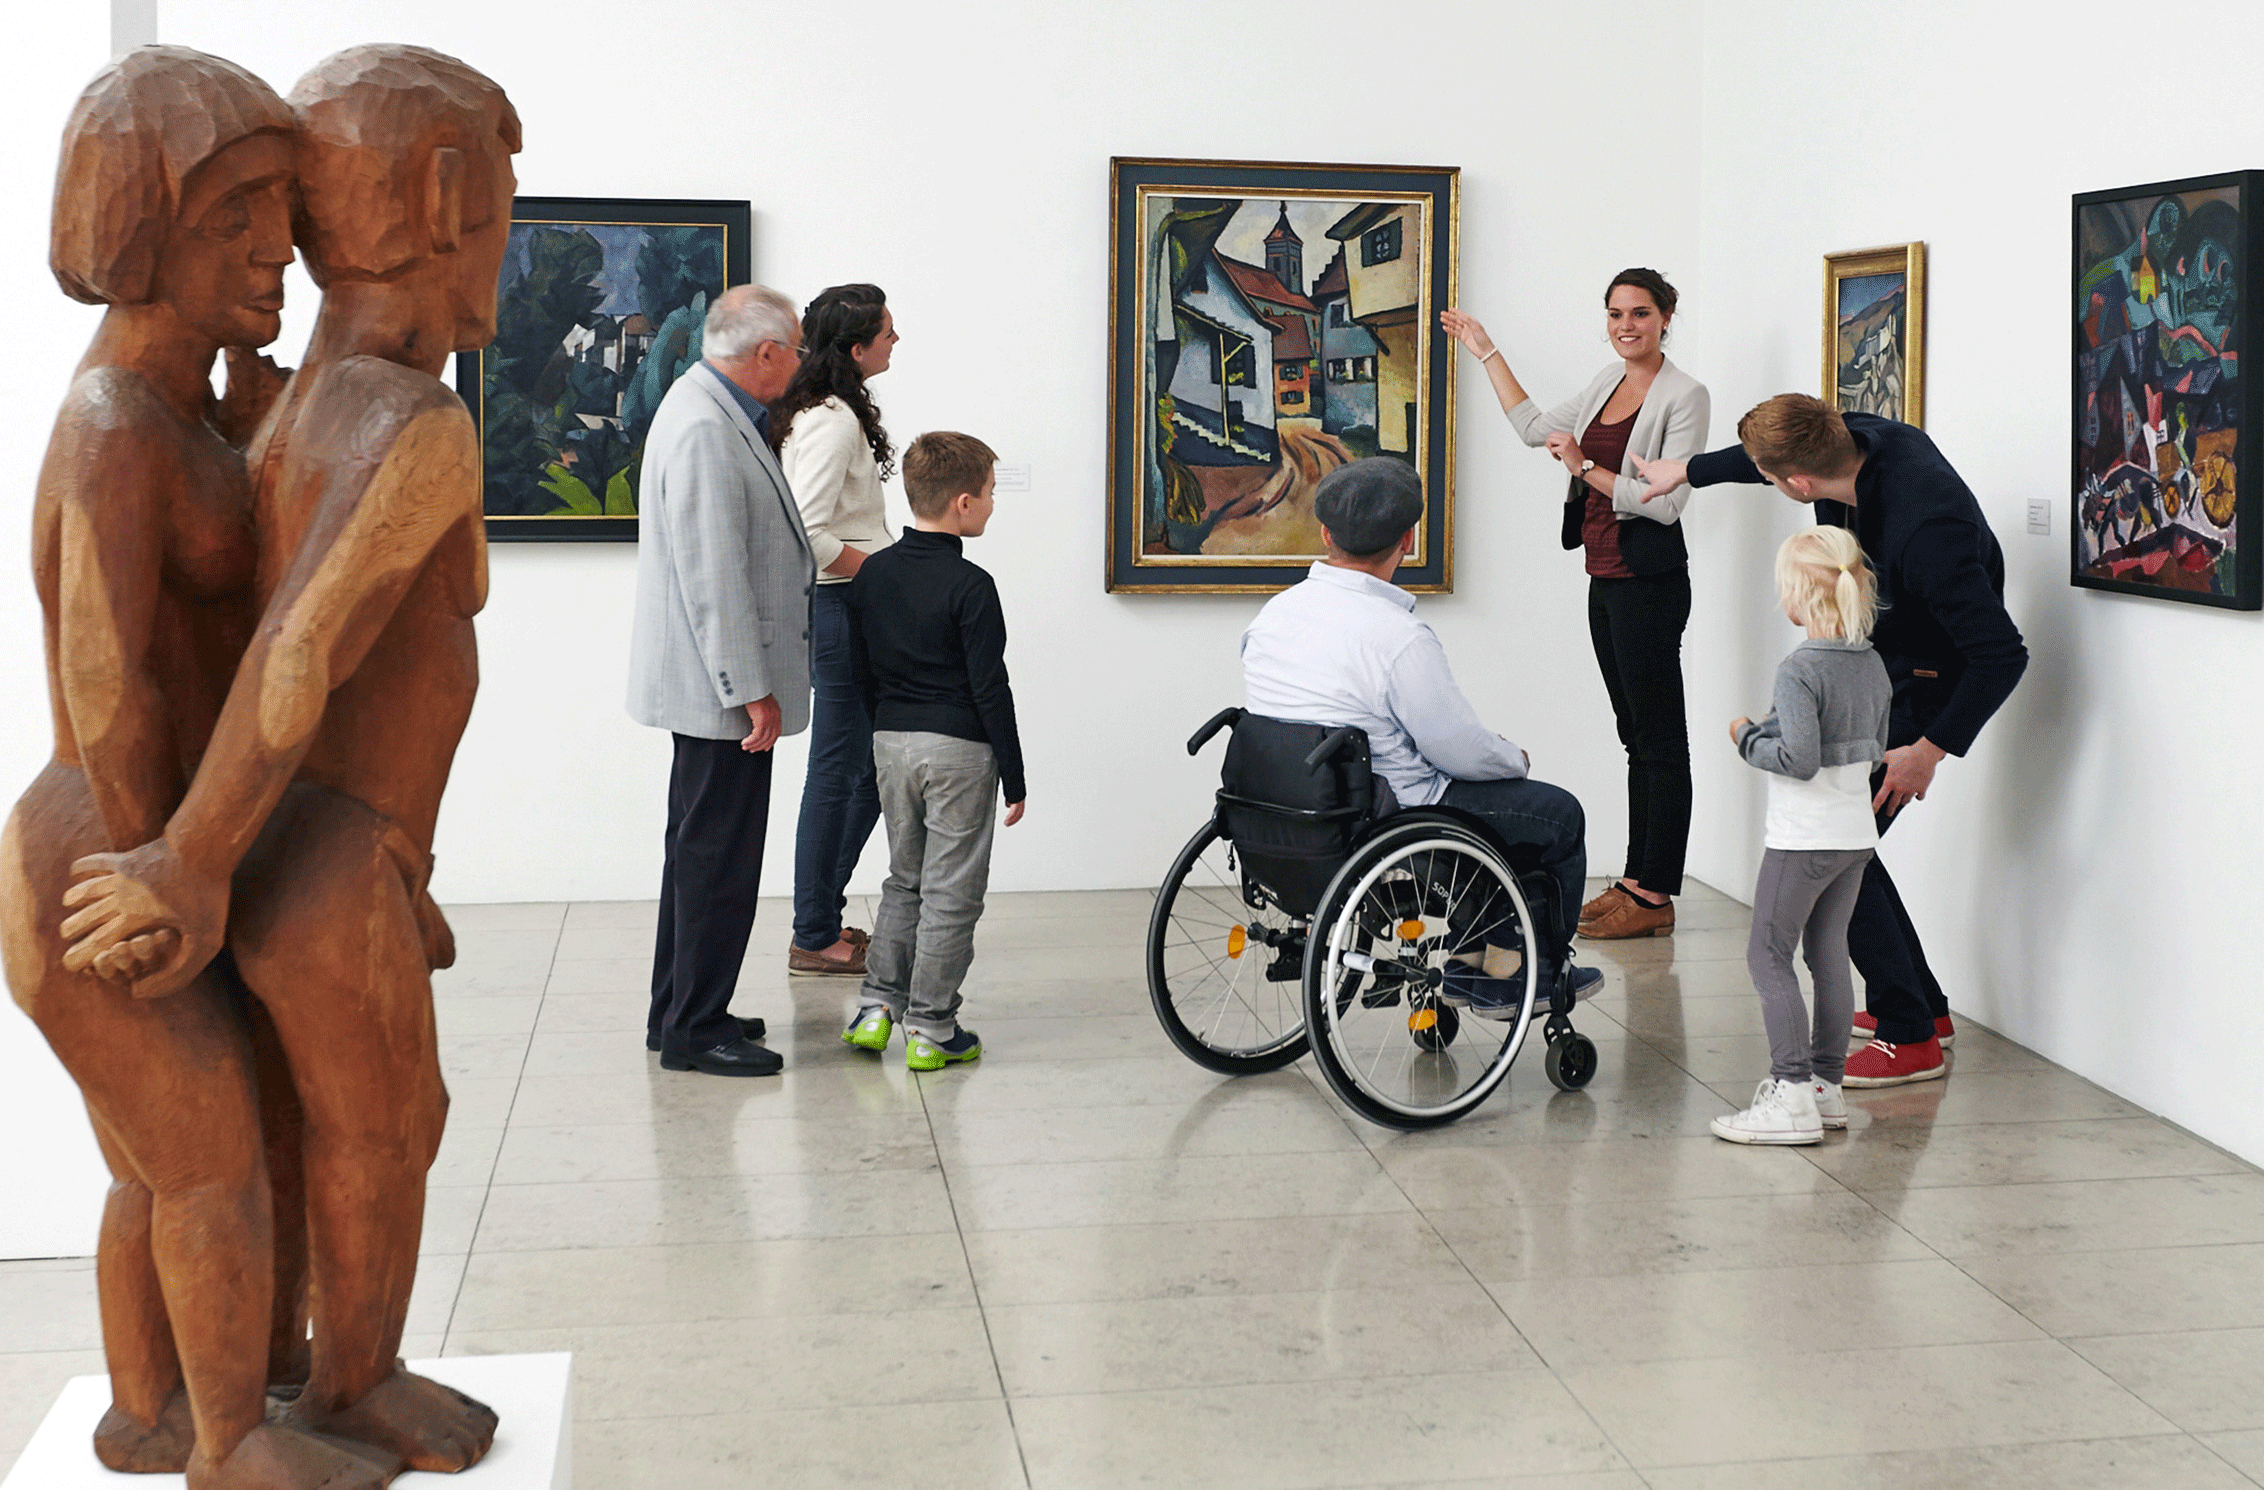 Blick in die Dauerausstellung des Museums für Neue Kunst. Personen betrachten einn Gemälde und bekommen dazu Informationen von einer Frau.